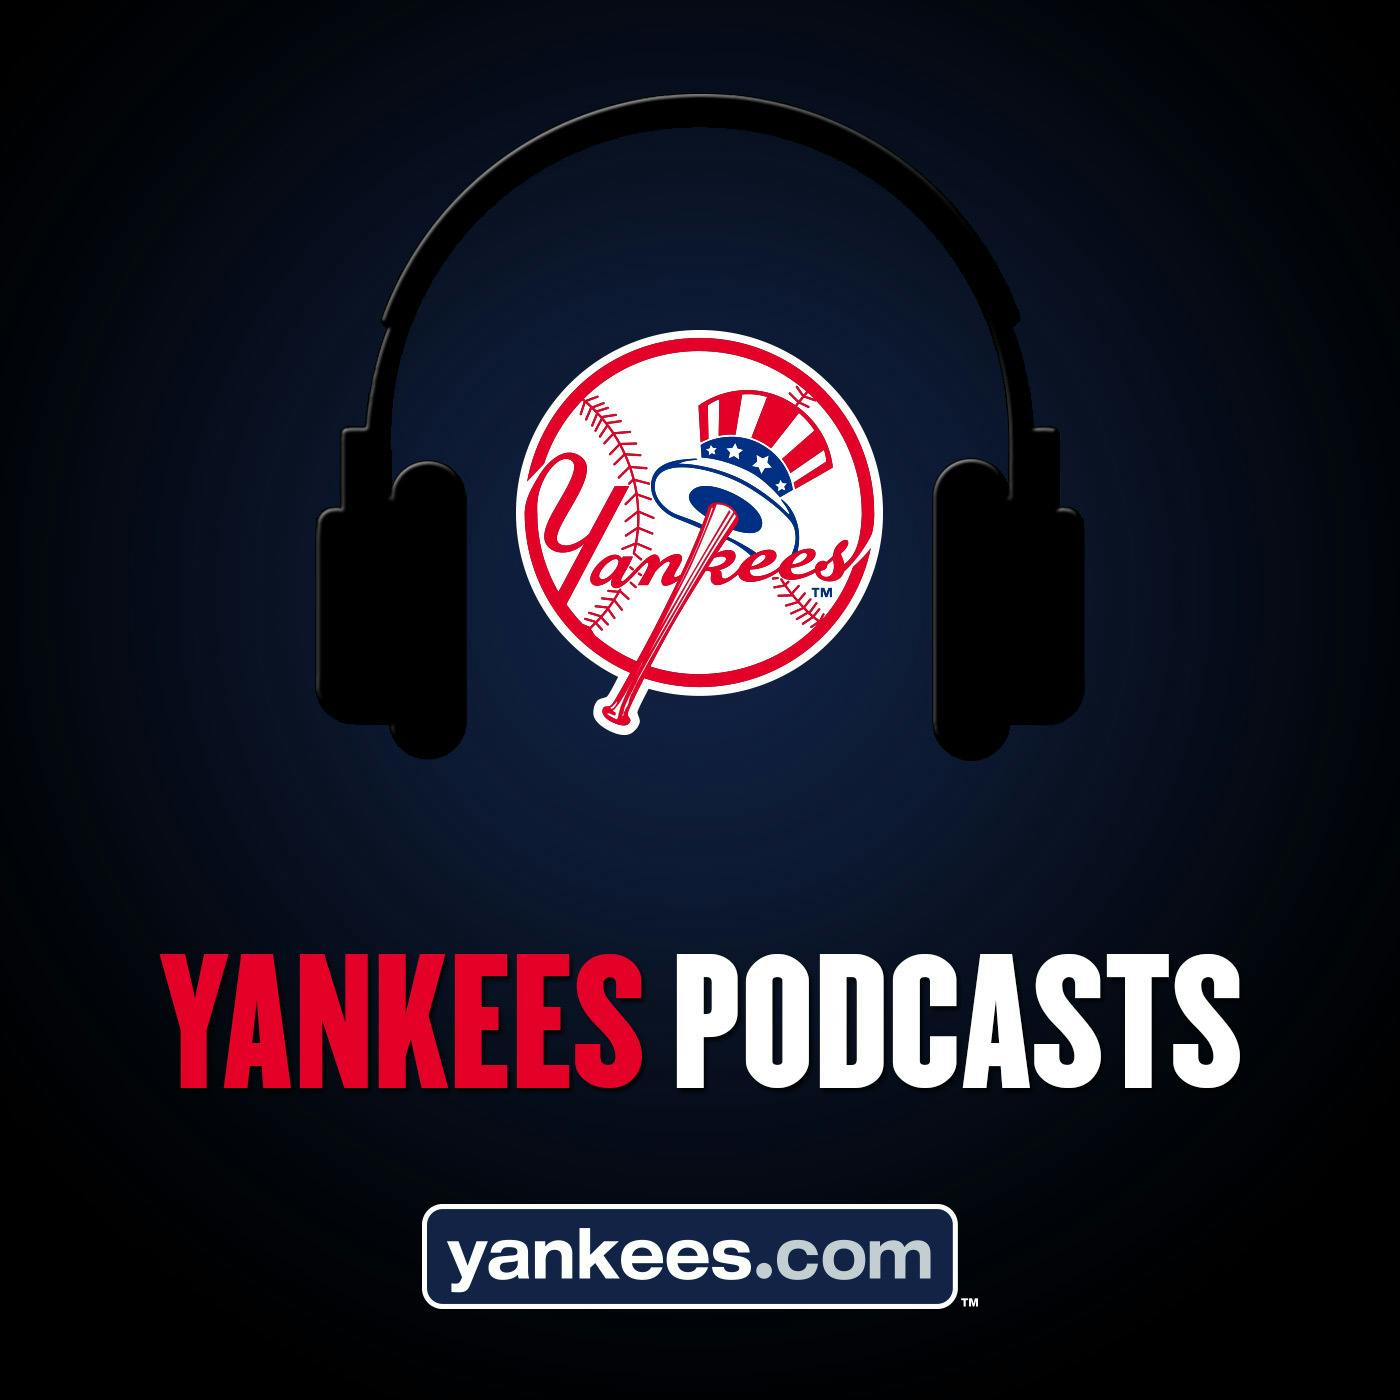 Yankees Magazine Podcast: Episode 18